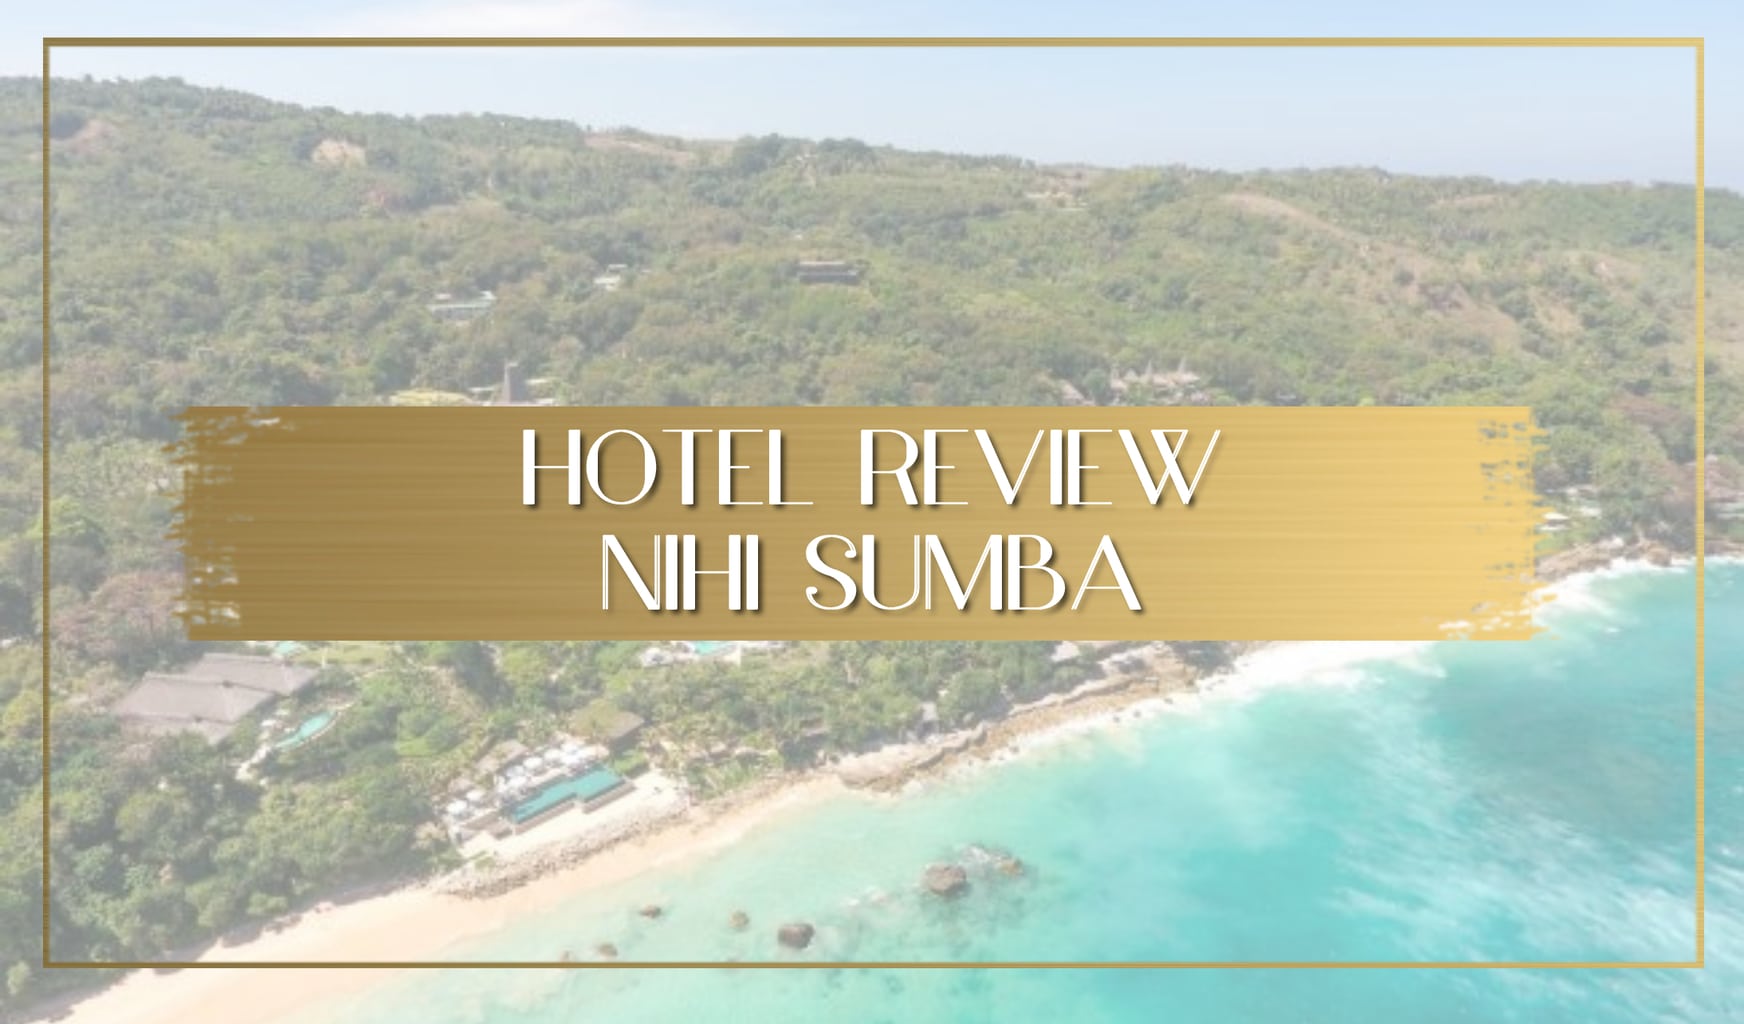 Nihi Sumba hotel review main